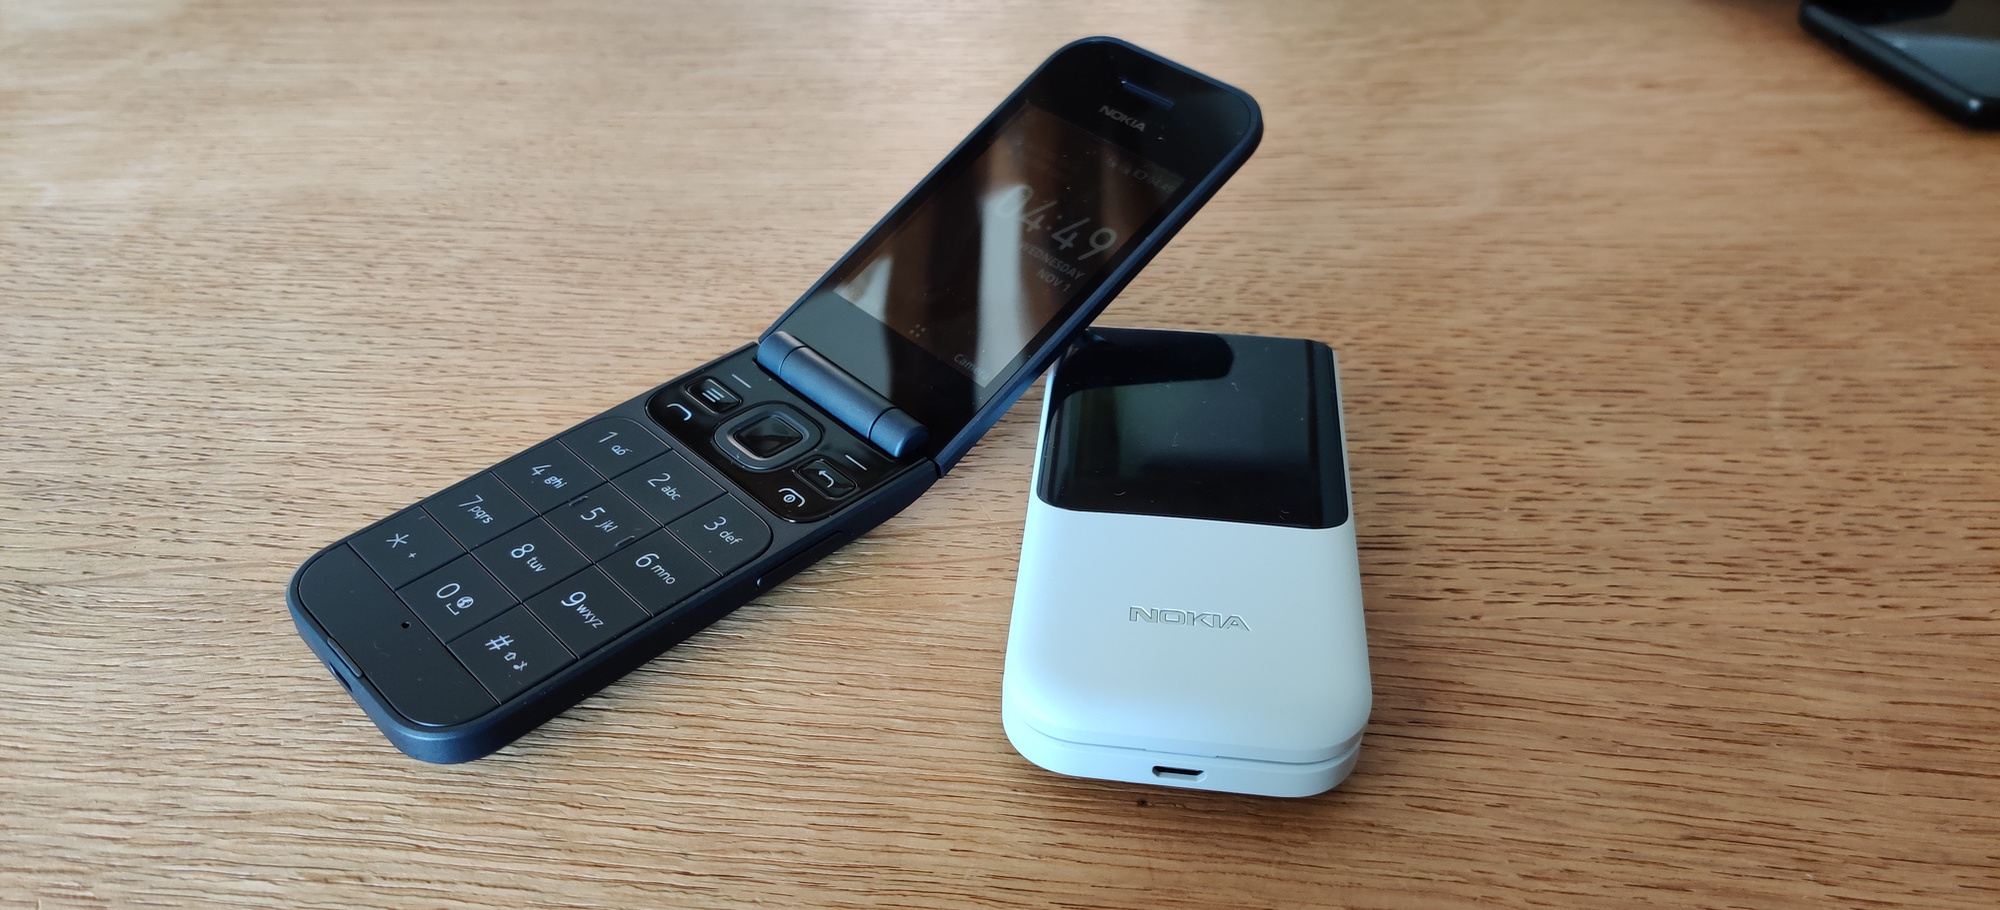 De Nokia 2720 Flip mikt onder meer op gebruikers van een oudere generatie, met grote toetsen en een alarmknop., PVL